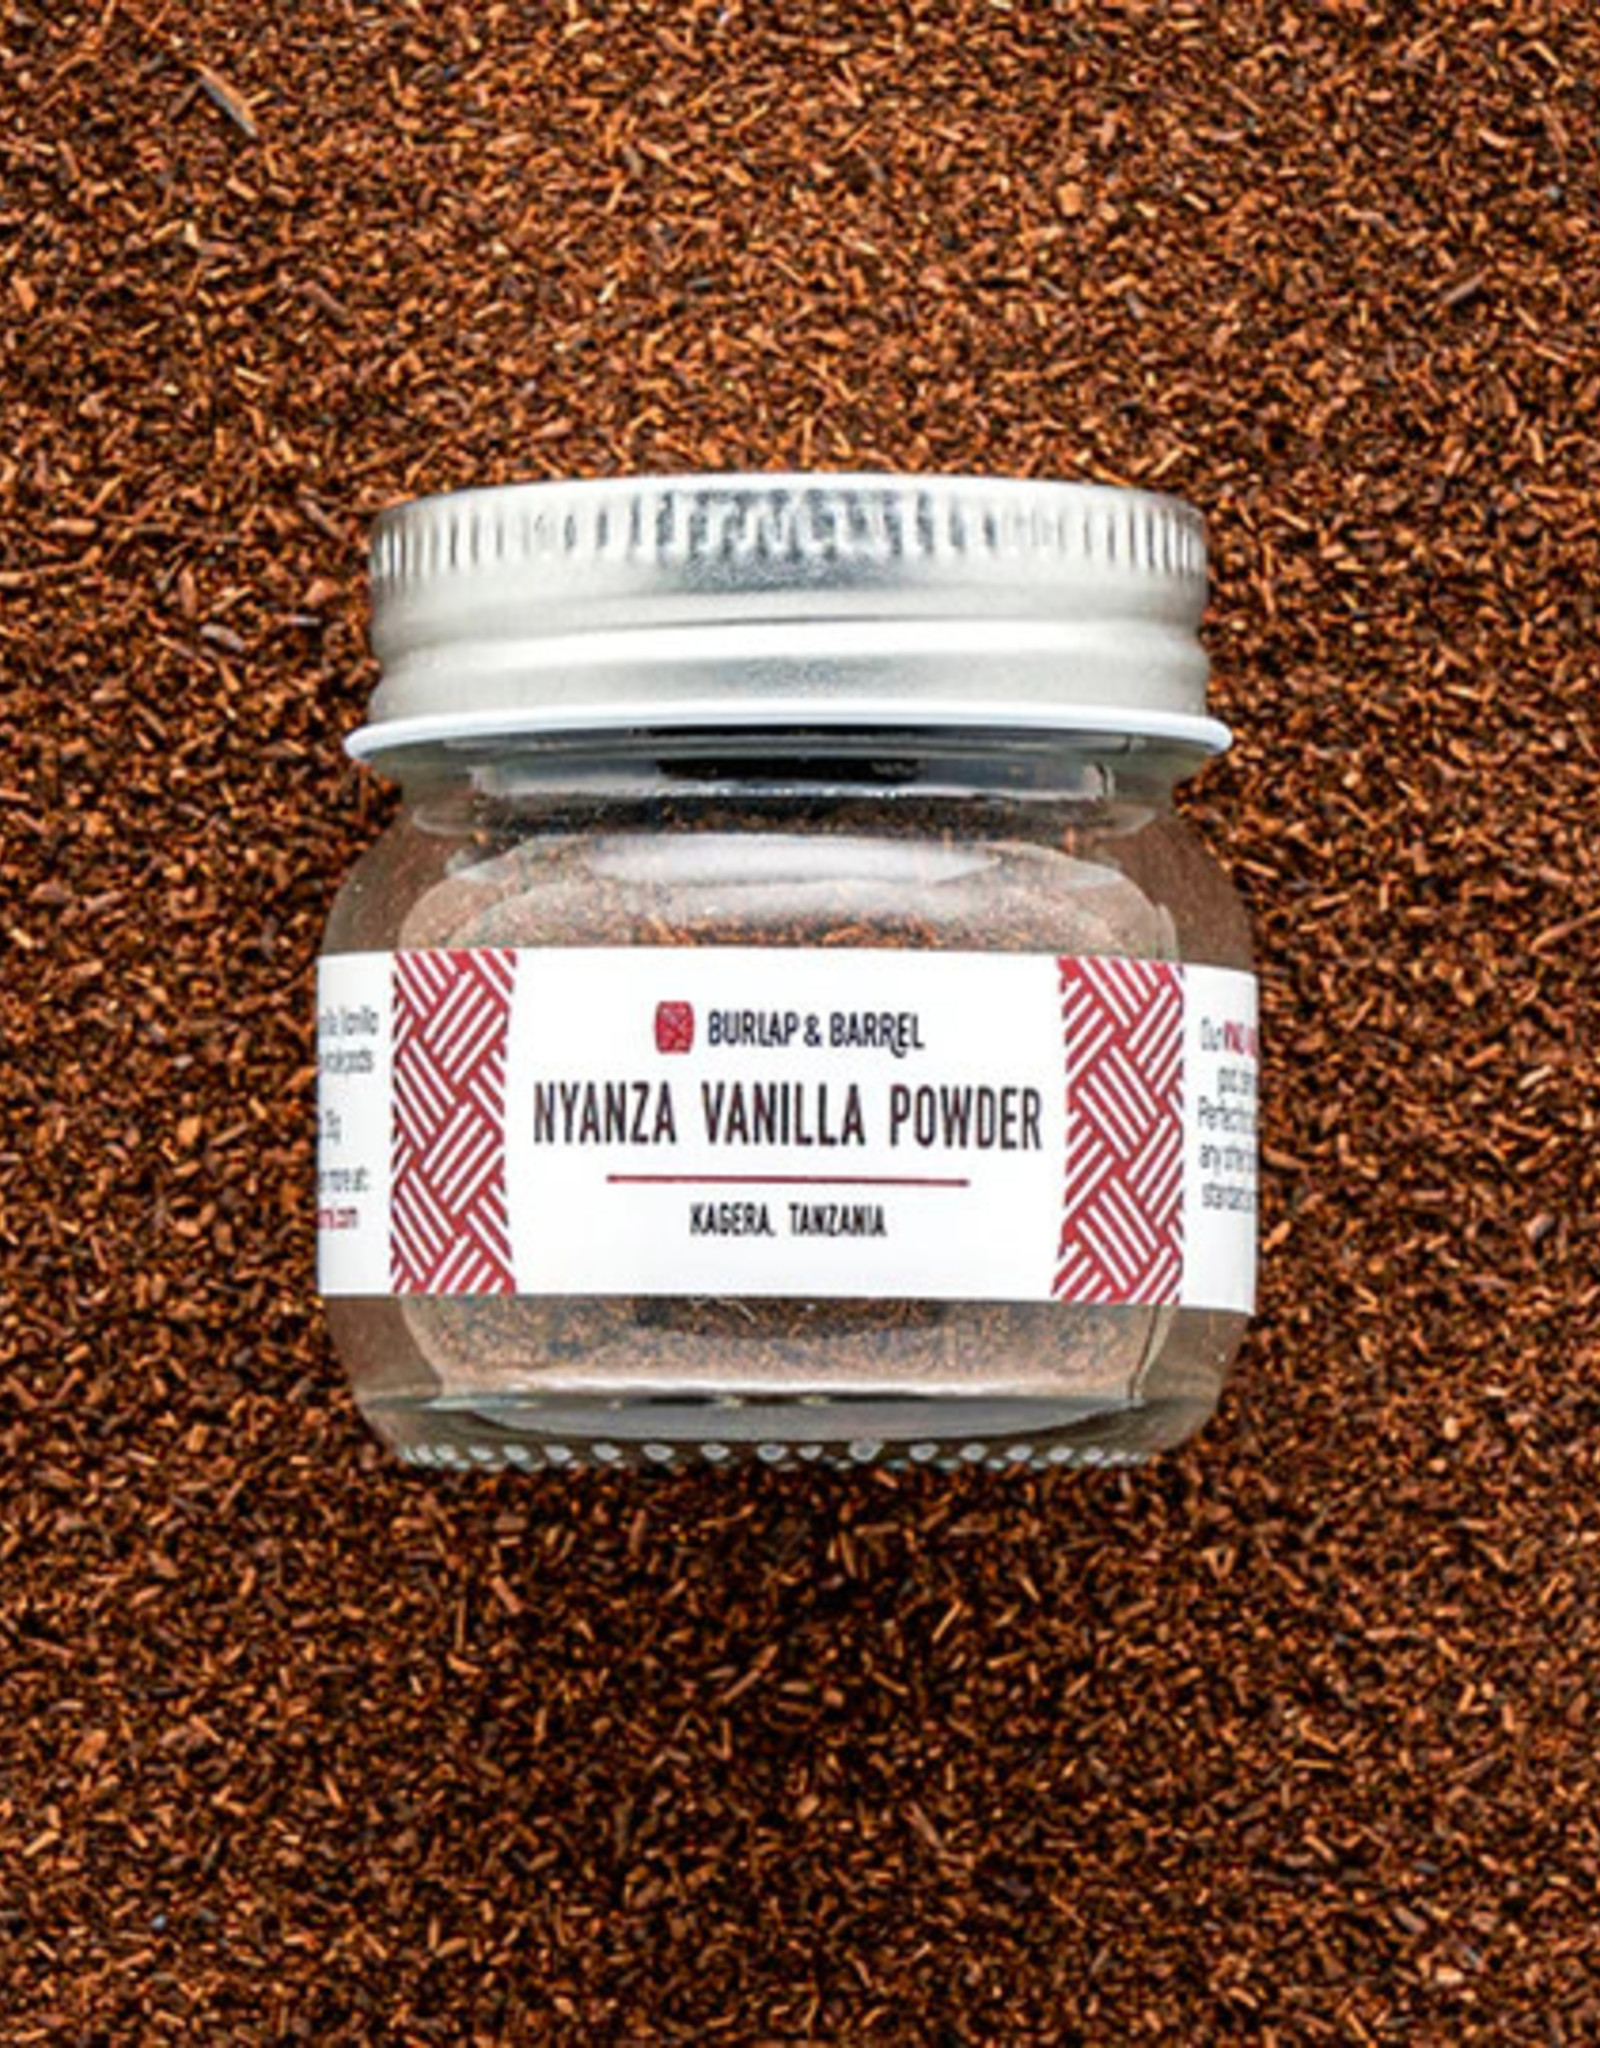 Burlap & Barrel Nyanza Vanilla Powder